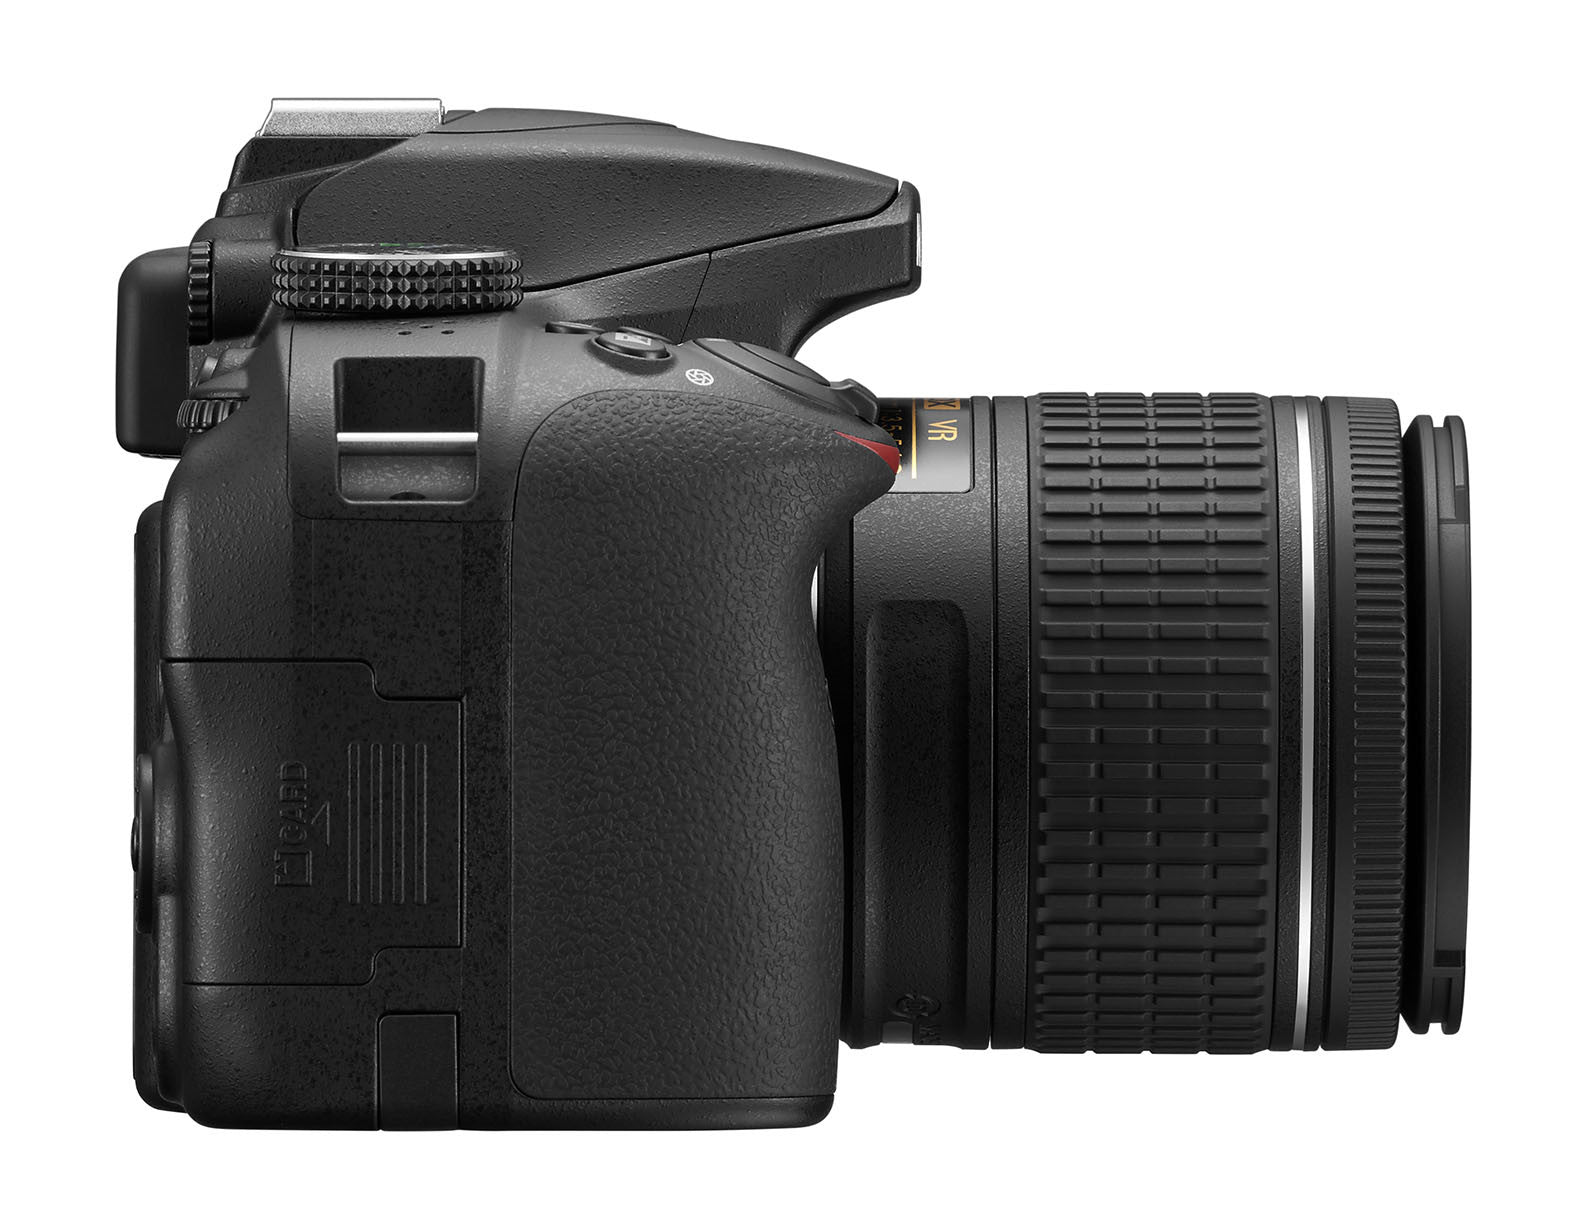 Nikon D3400 DX-format Digital SLR Kit w/ 18-55mm DX G VR Zoom Lens Black, camera dslr cameras, Nikon - Pictureline  - 6